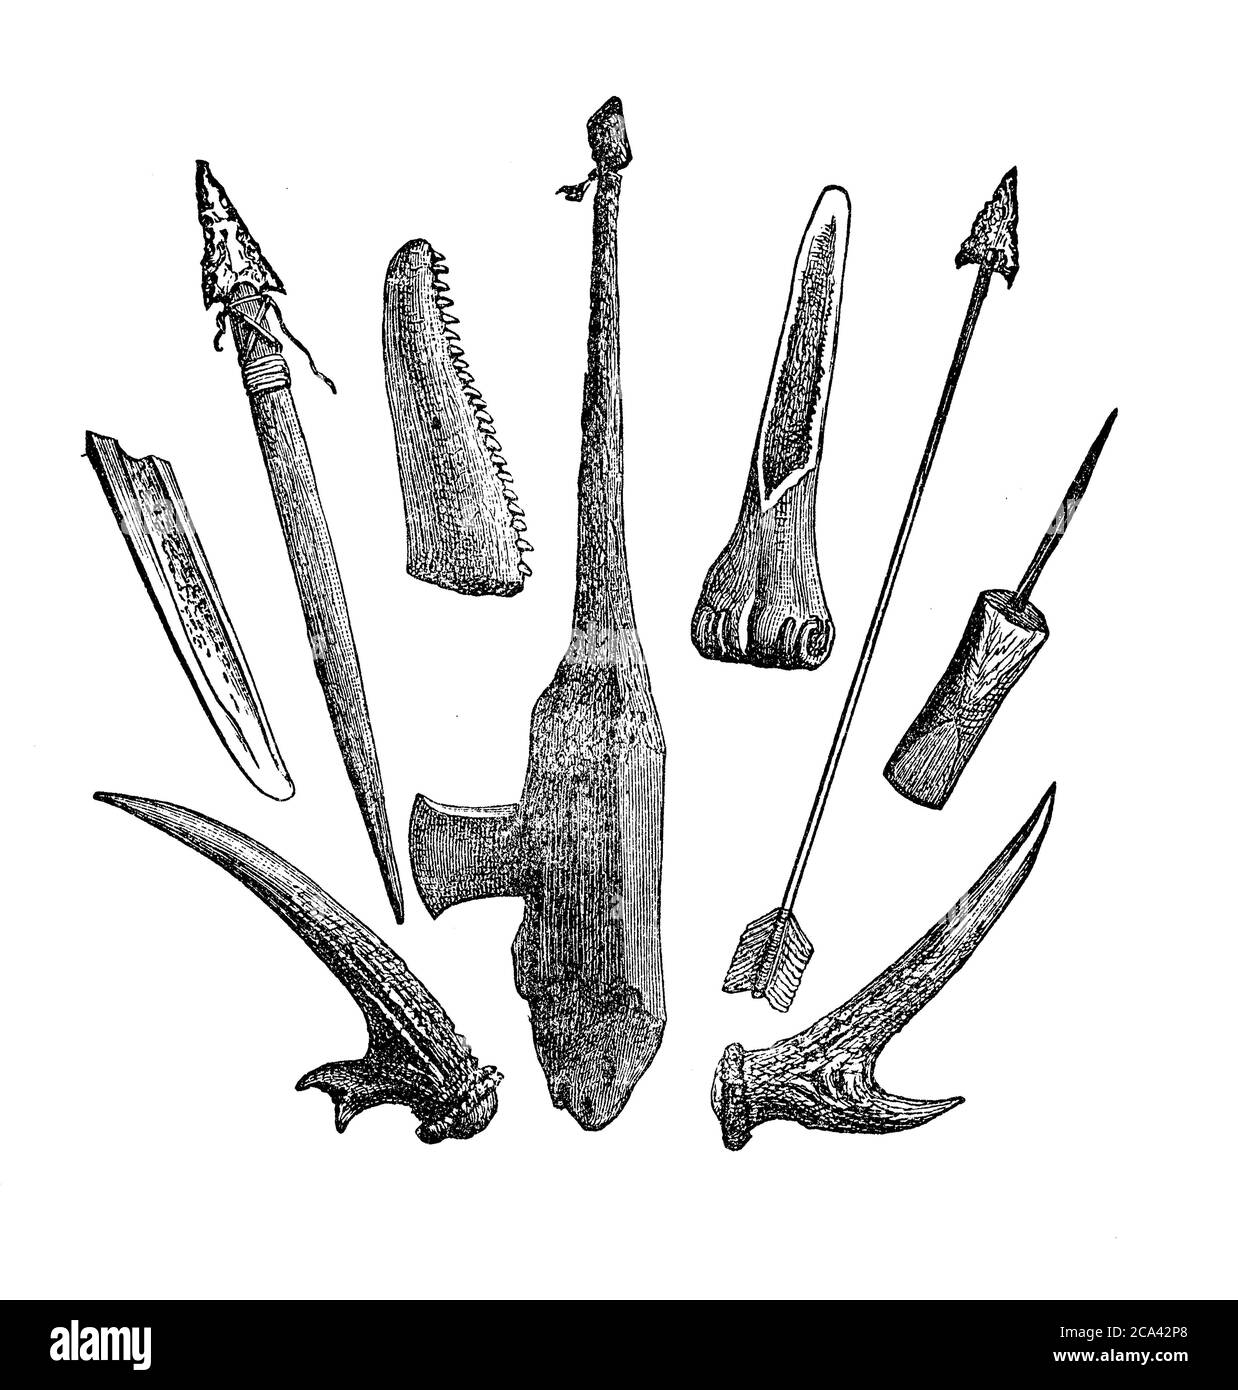 Tierra del fuego Archipel: Primitive Werkzeuge und Waffe aus Knochen Stockfoto